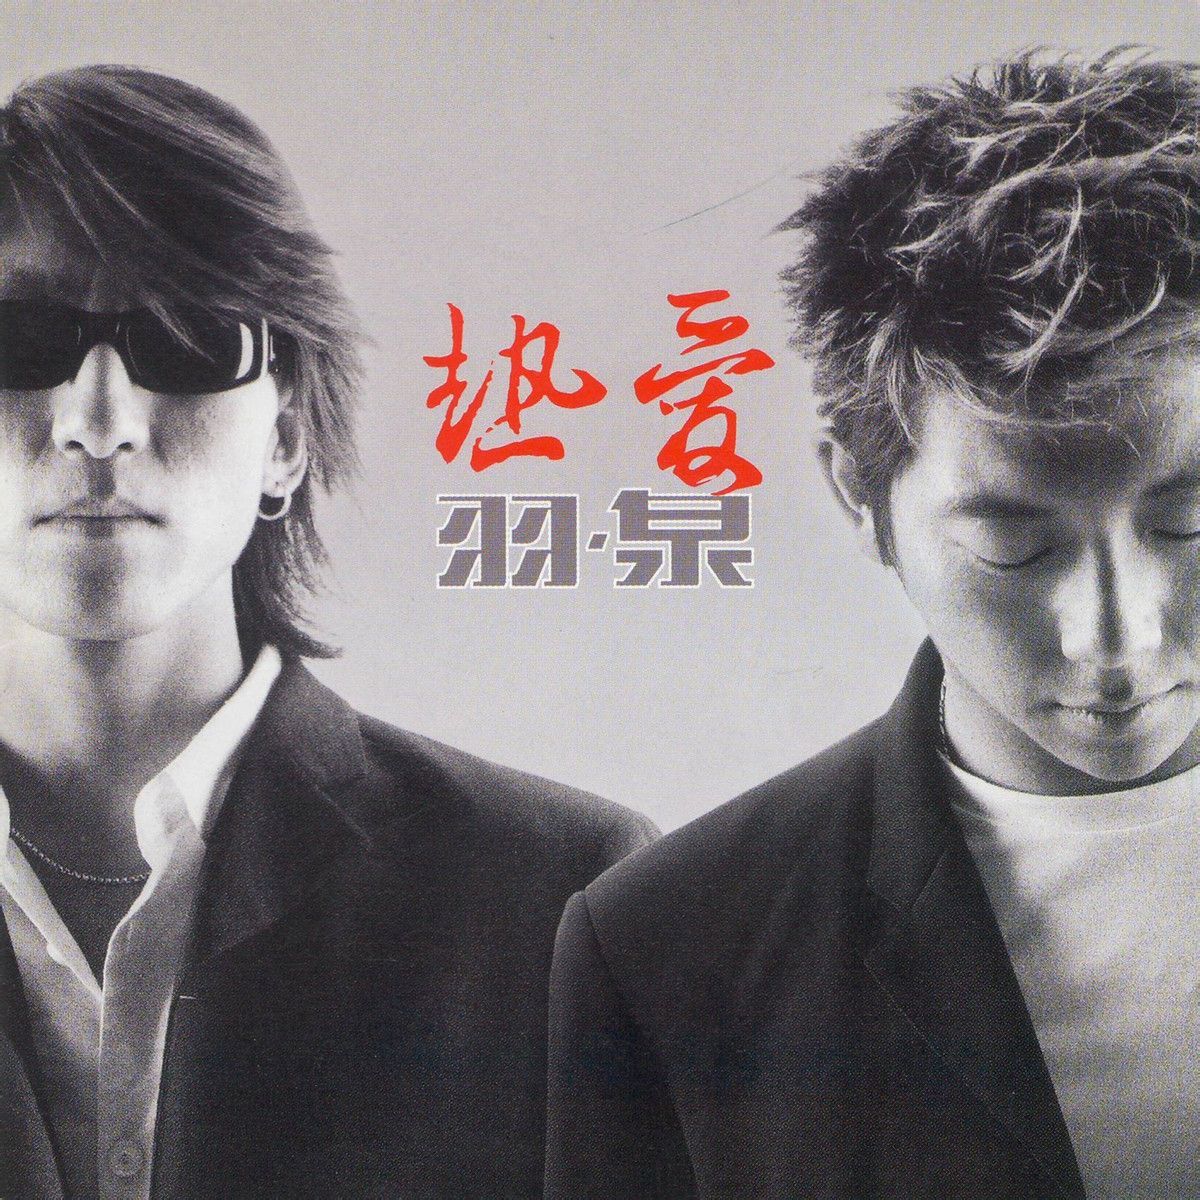 深呼吸(其他)羽泉2001年专辑《热爱》中歌曲,滚石唱片发行,摩托罗拉